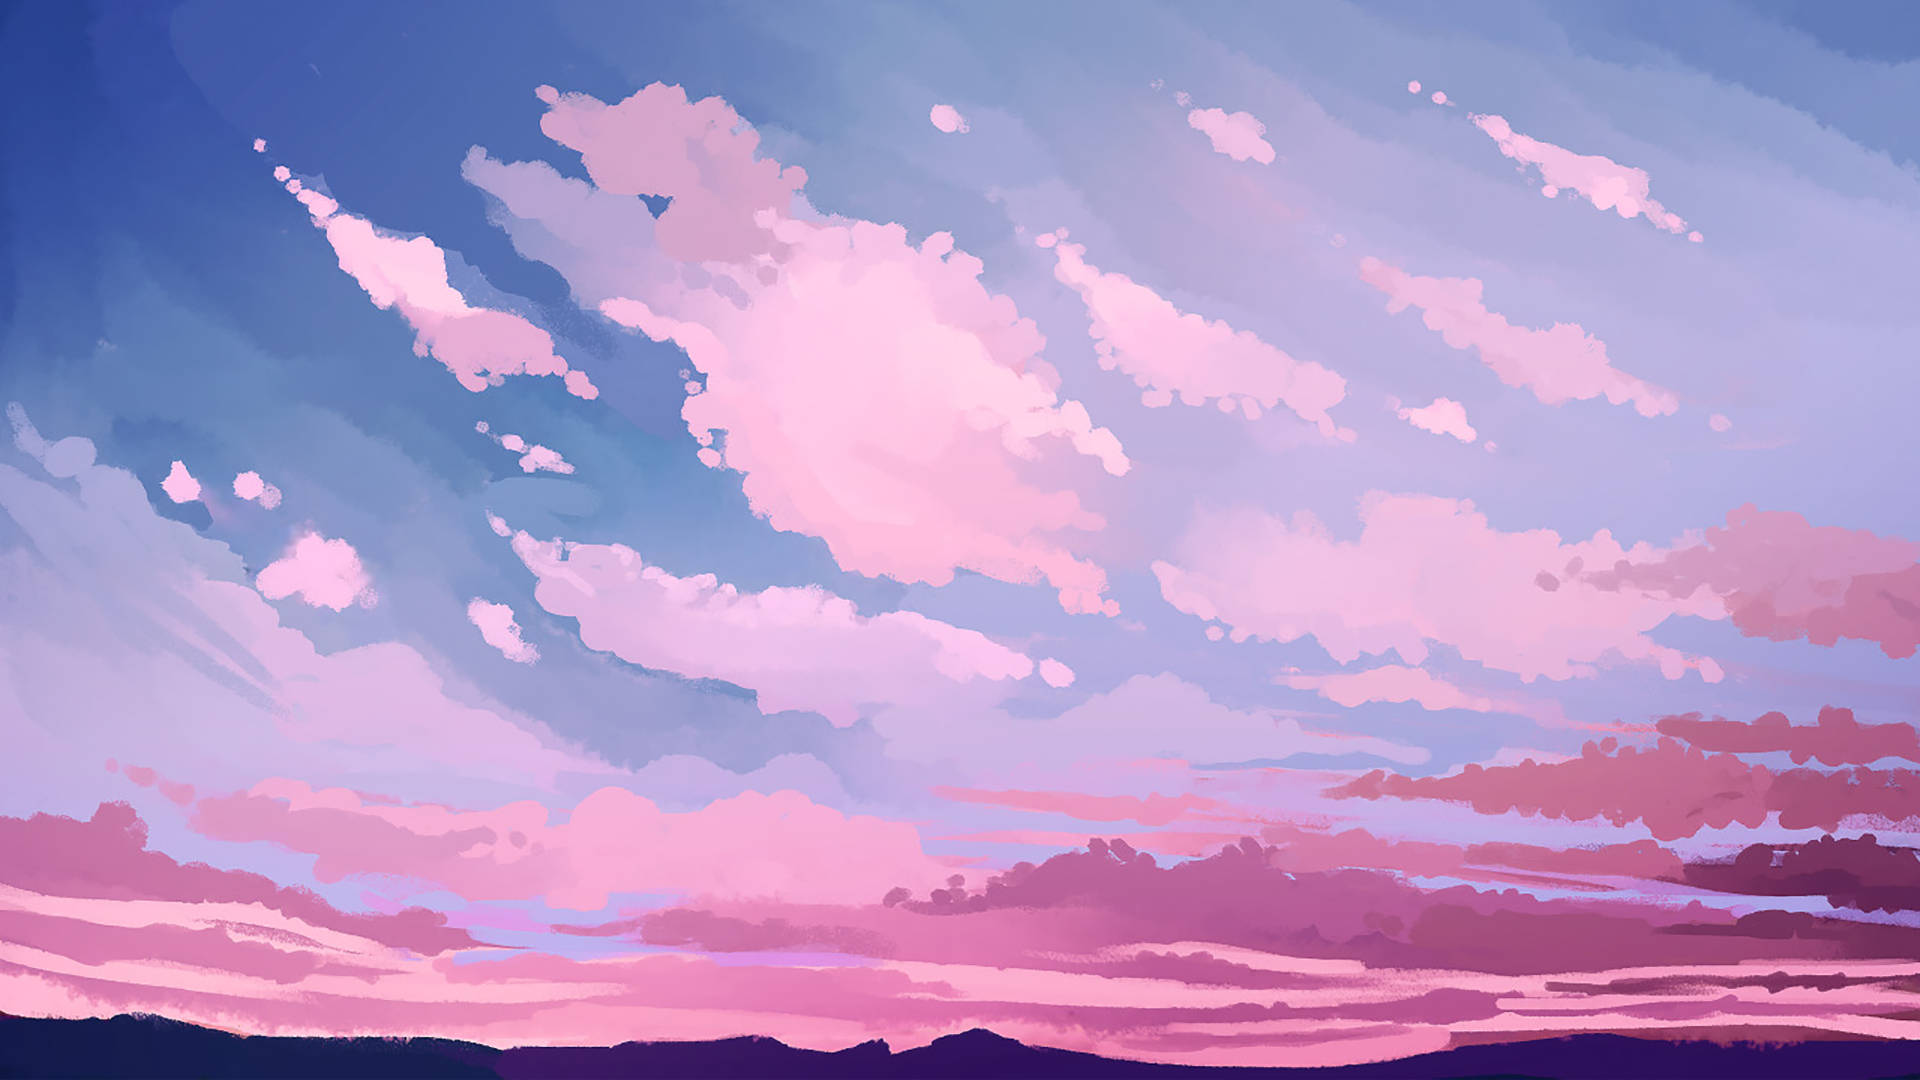 Aesthetic Art Lovely Sky Background